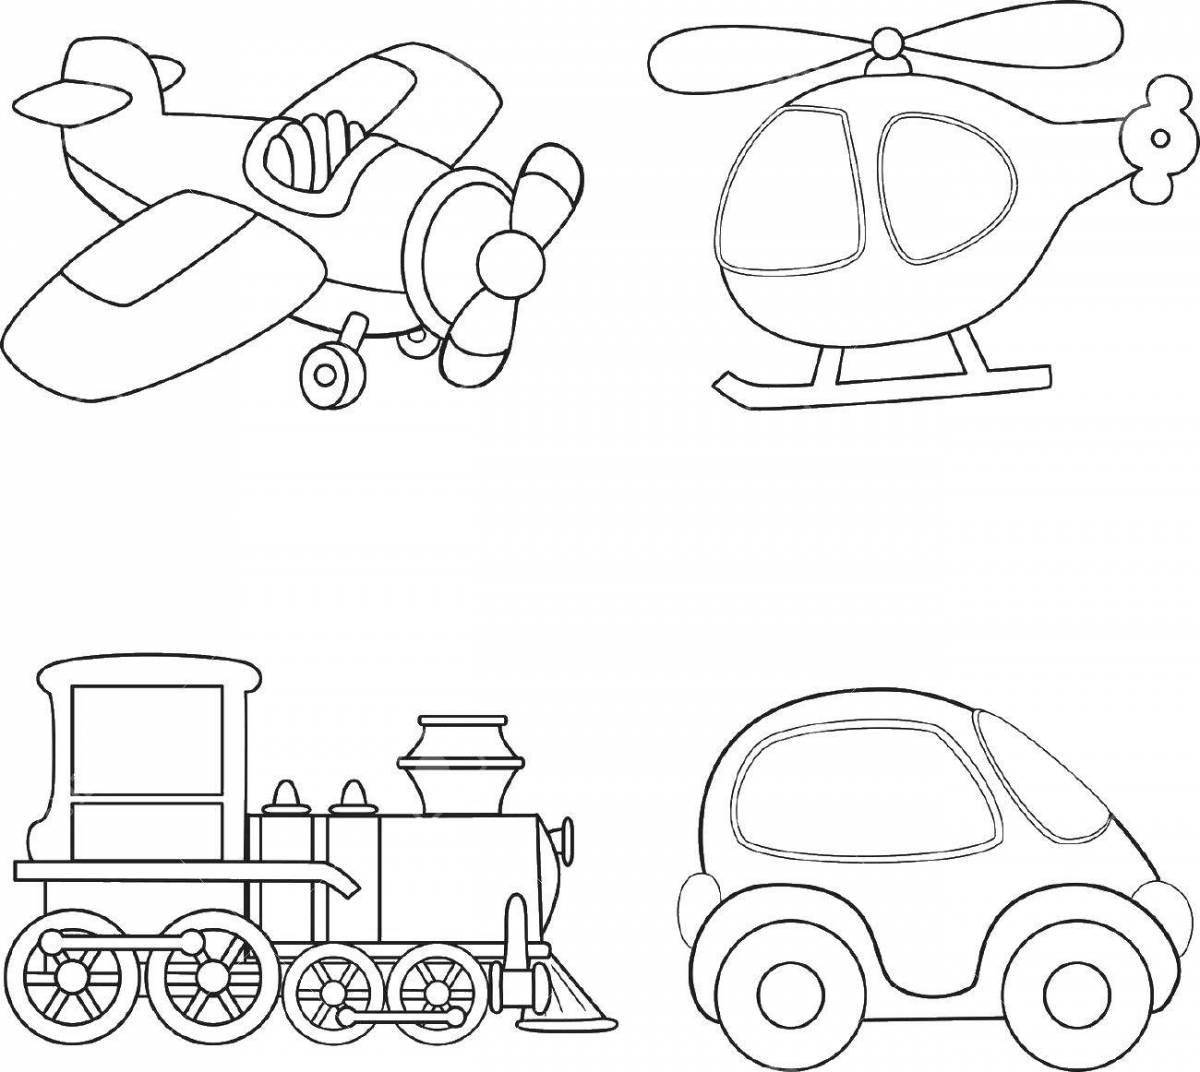 Увлекательная раскраска для дошкольников виды транспорта